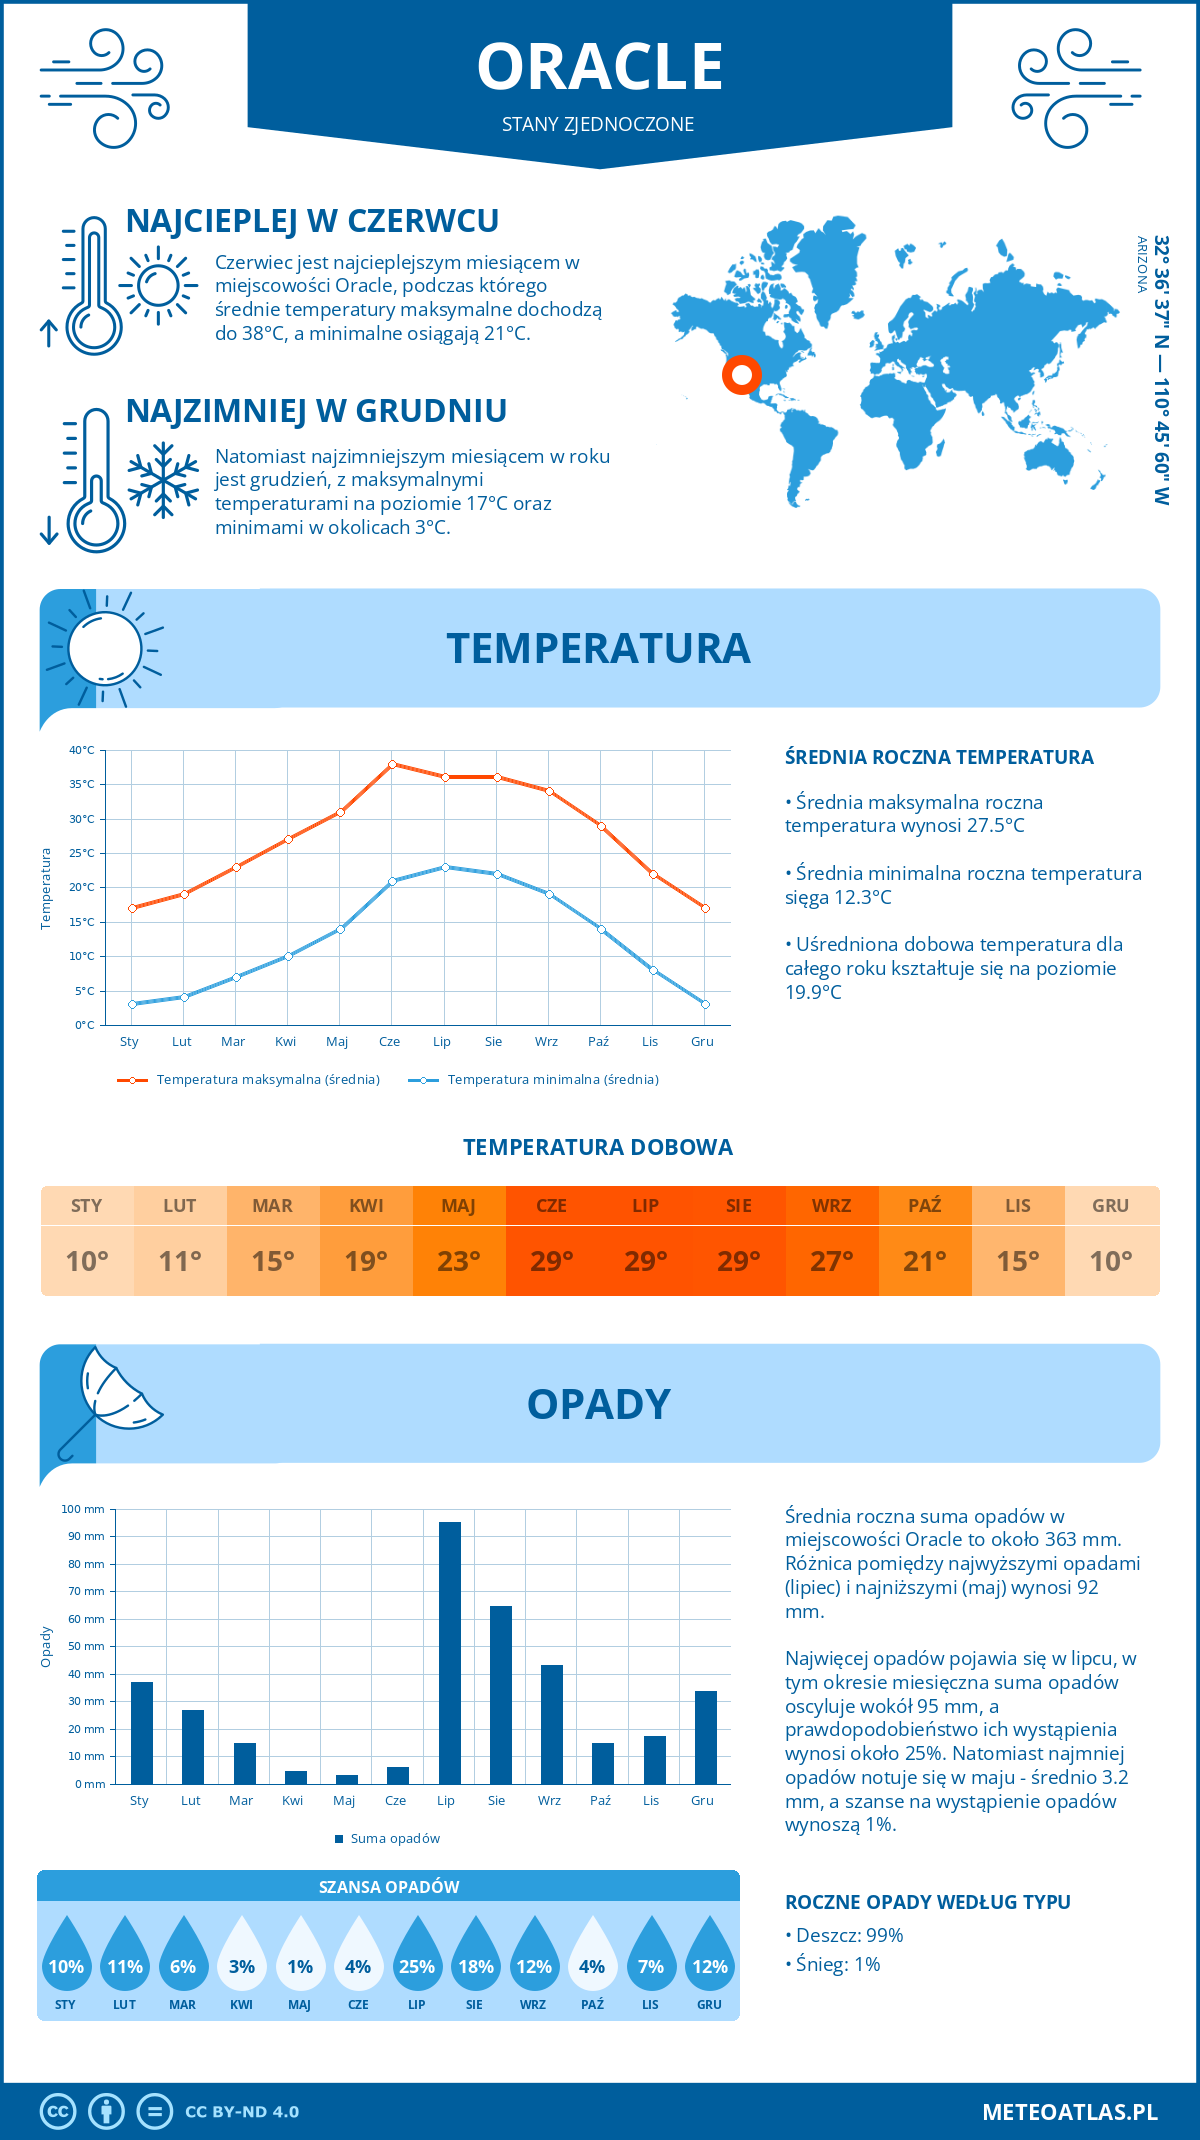 Pogoda Oracle (Stany Zjednoczone). Temperatura oraz opady.